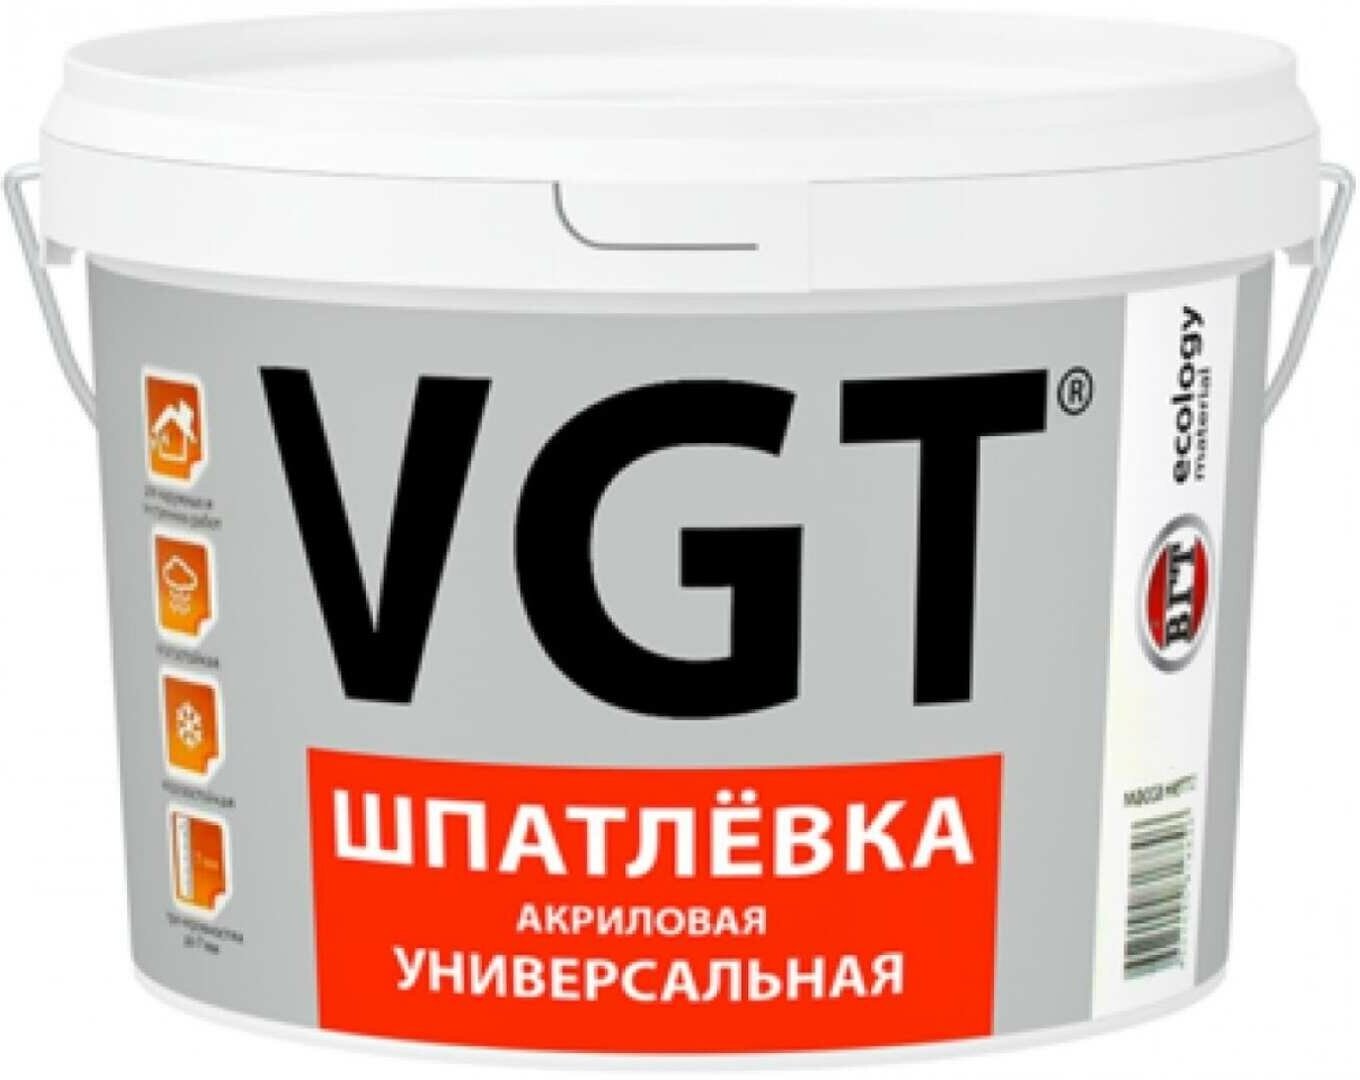 Шпатлевка универсальная для наружных и внутренних работ Vgt (ВГТ), акриловая, 1,7 кг